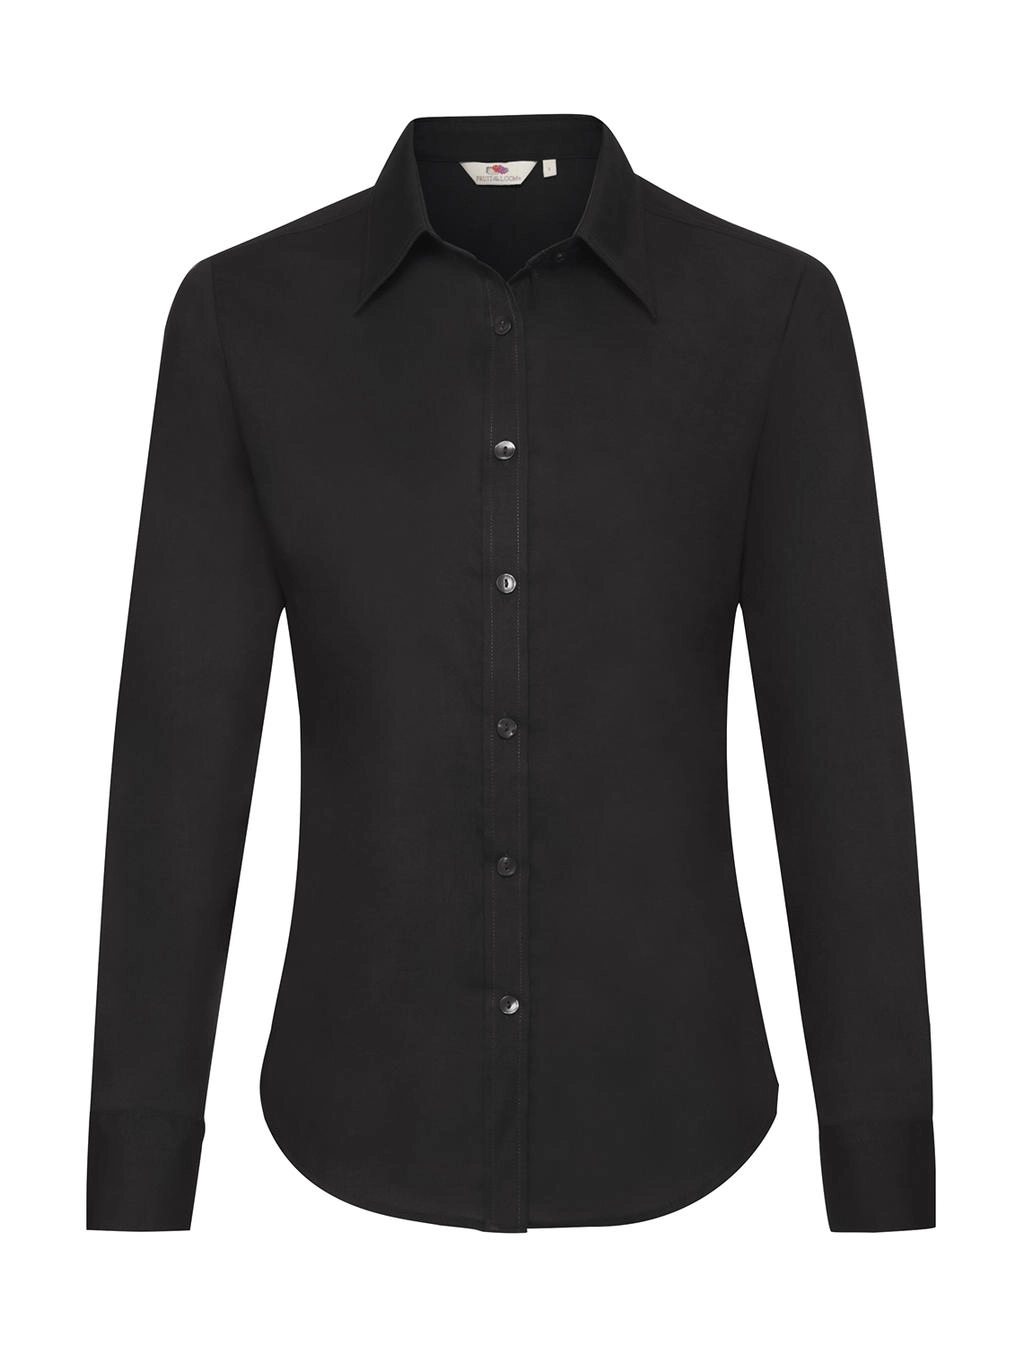 Ladies` Oxford Shirt LS zum Besticken und Bedrucken in der Farbe Black mit Ihren Logo, Schriftzug oder Motiv.